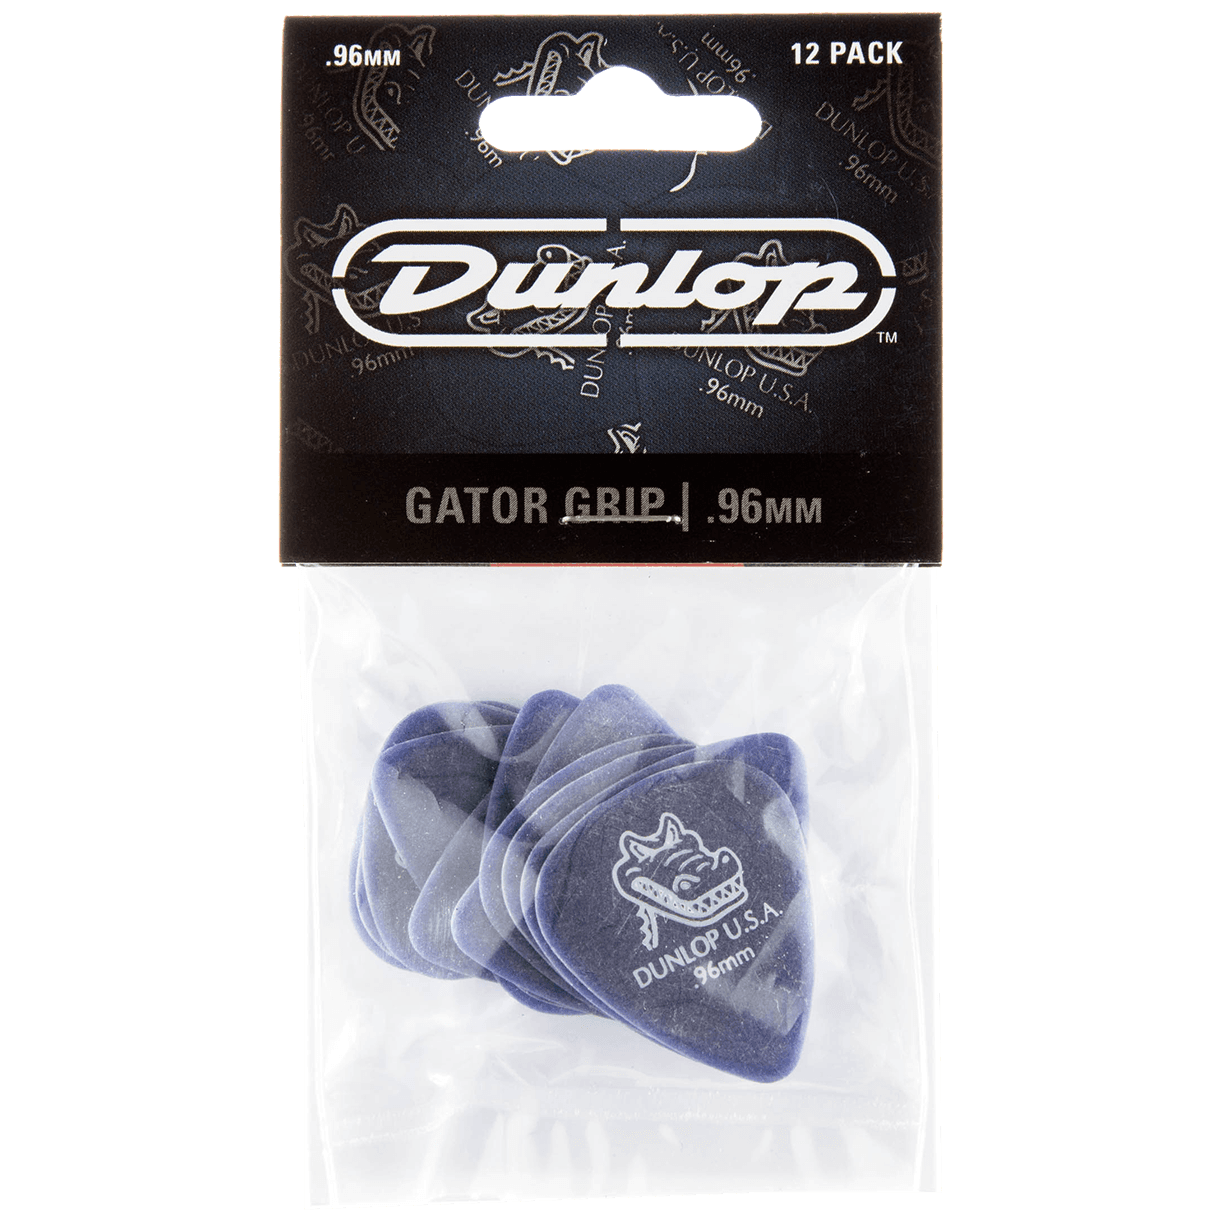 Dunlop Gator Grip 0.96 Player's Pack 12 Stück